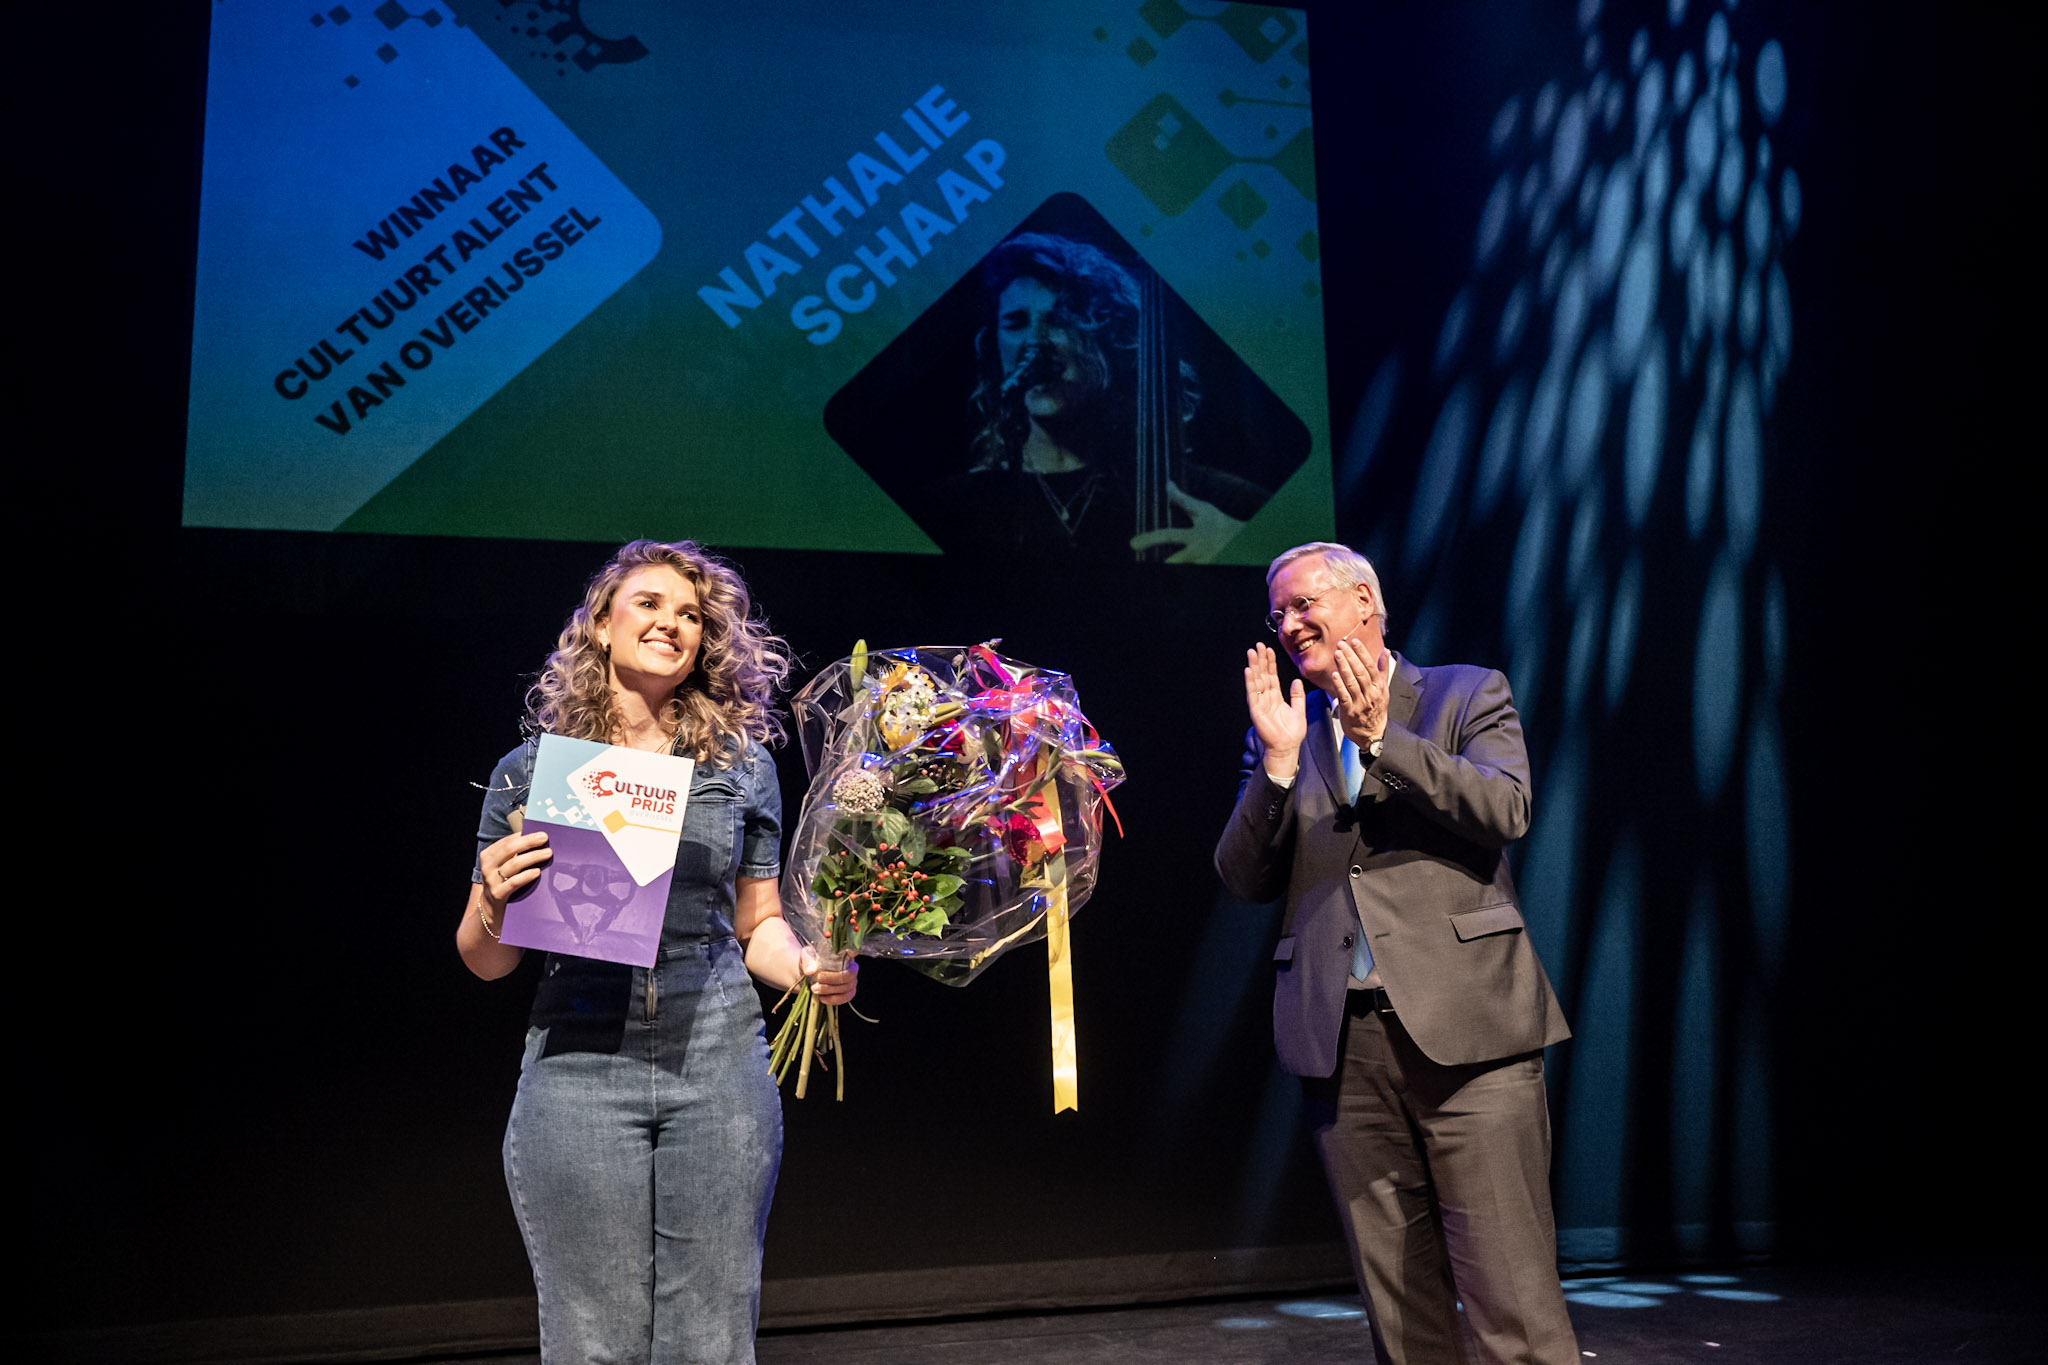 Nathalie Schaap Prijswinnares van de Talent Cultuur Prijs Overijssel 2022